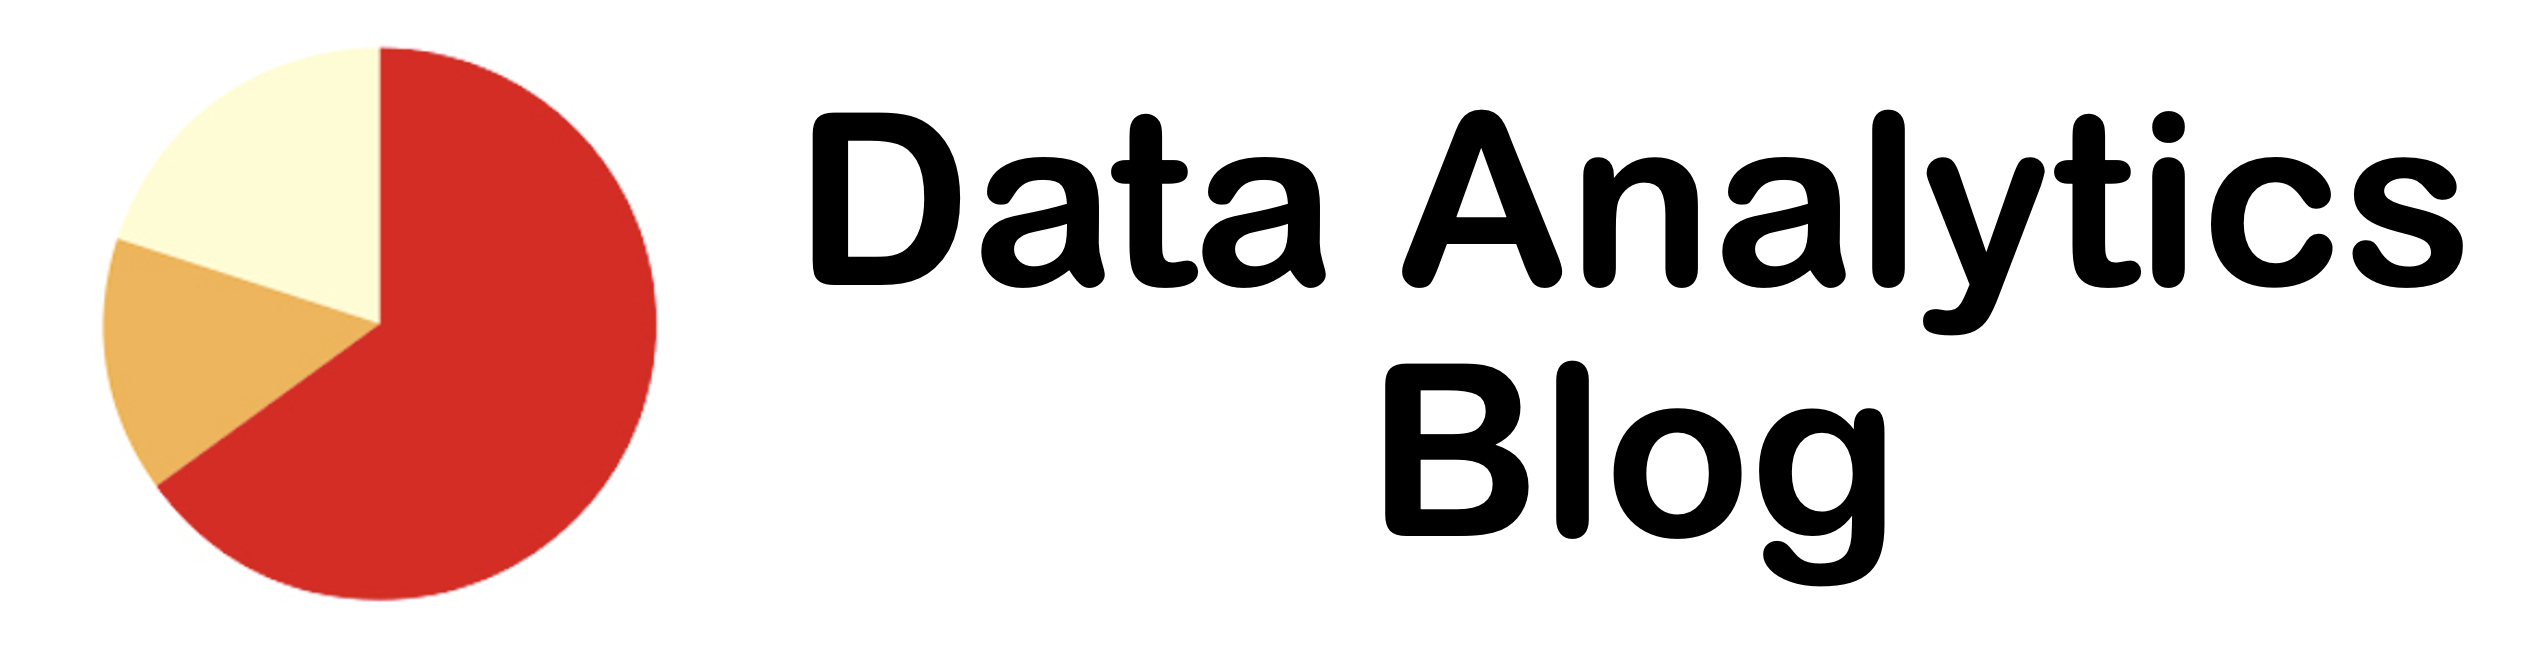 Data Analytics Blog